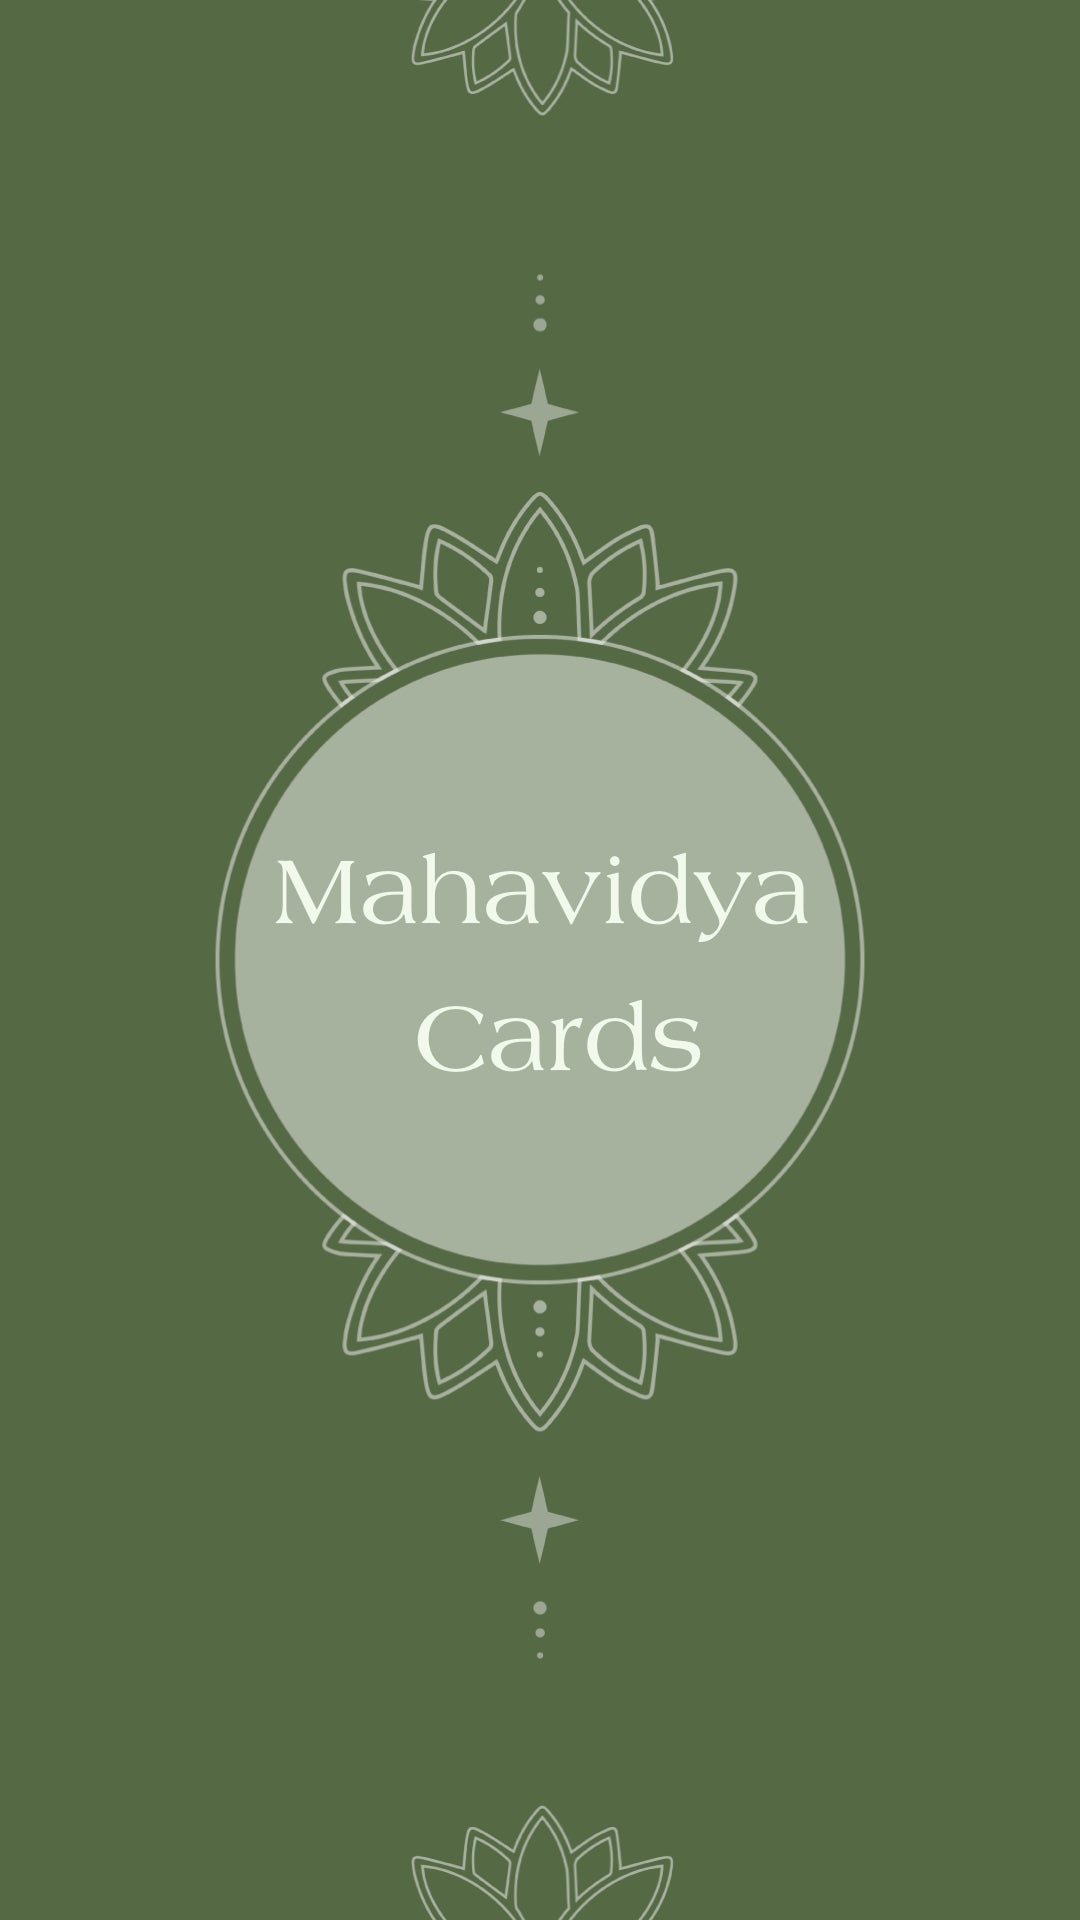 MahaVidya Cards